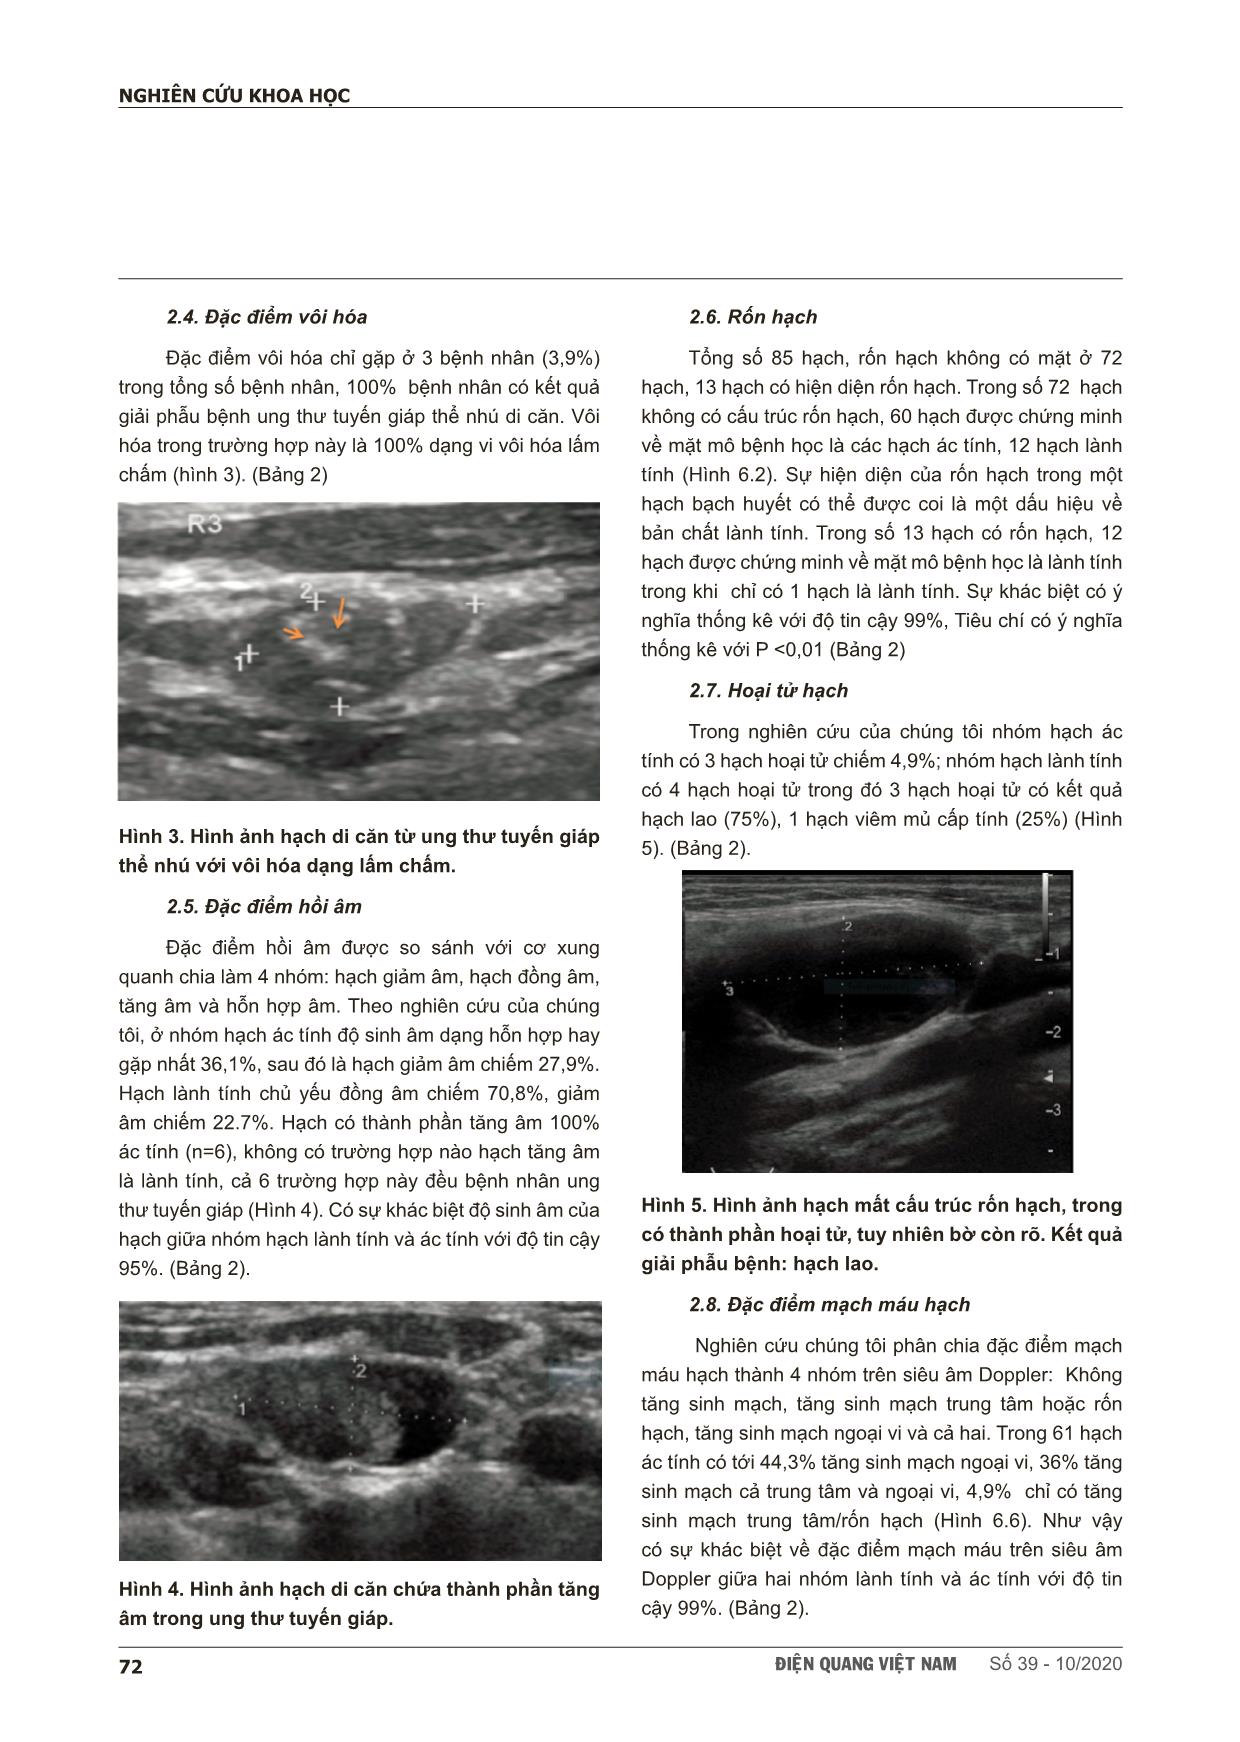 Nghiên cứu đặc điểm hình ảnh và giá trị siêu âm trong chẩn đoán hạch cổ ác tính trang 5